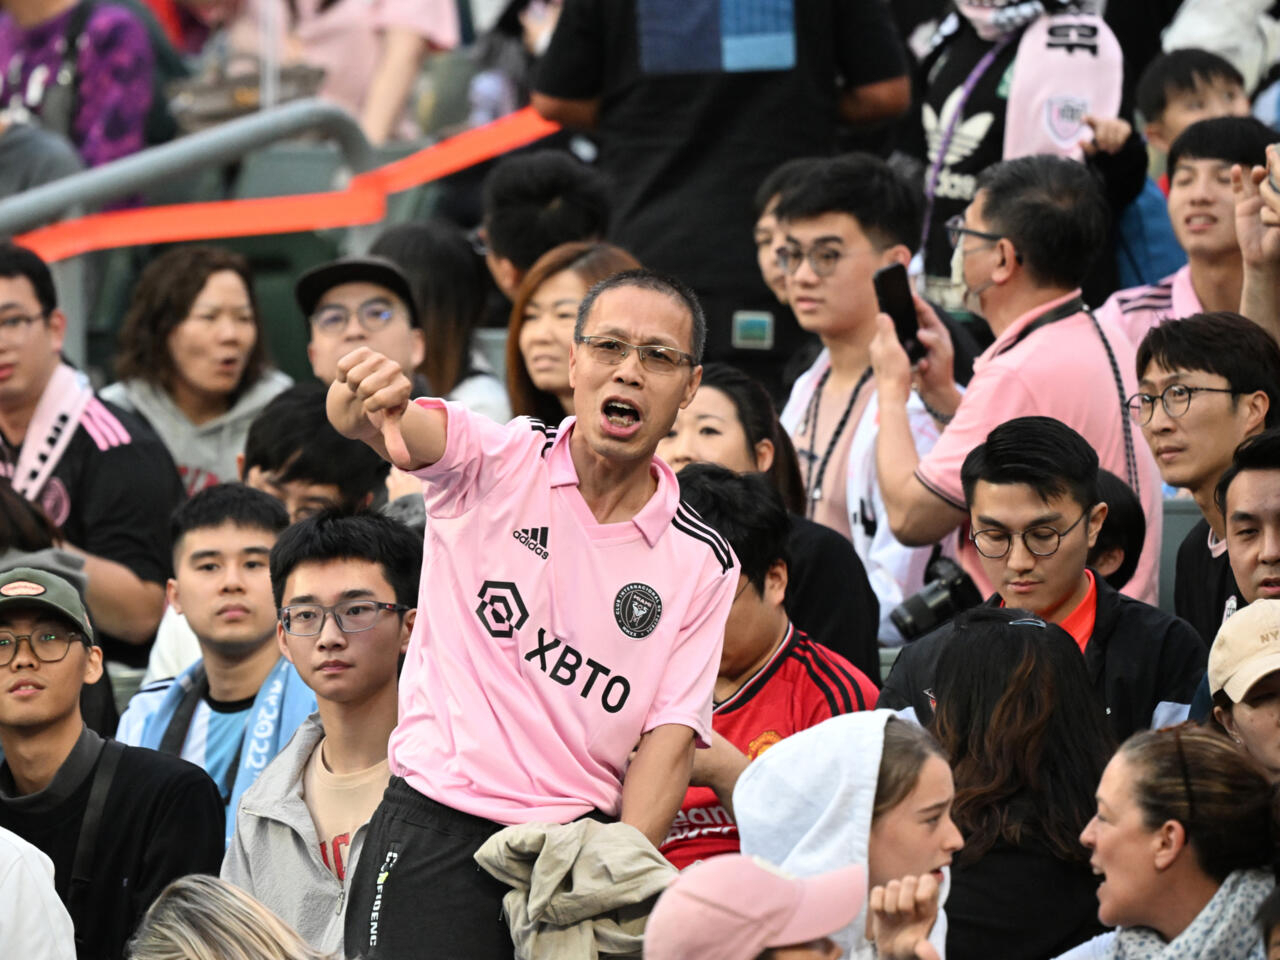 غضب جماهيري في هونغ كونغ لعدم مشاركة ميسي في ودية إنتر ميامي ضد نجوم الدوري المحلي